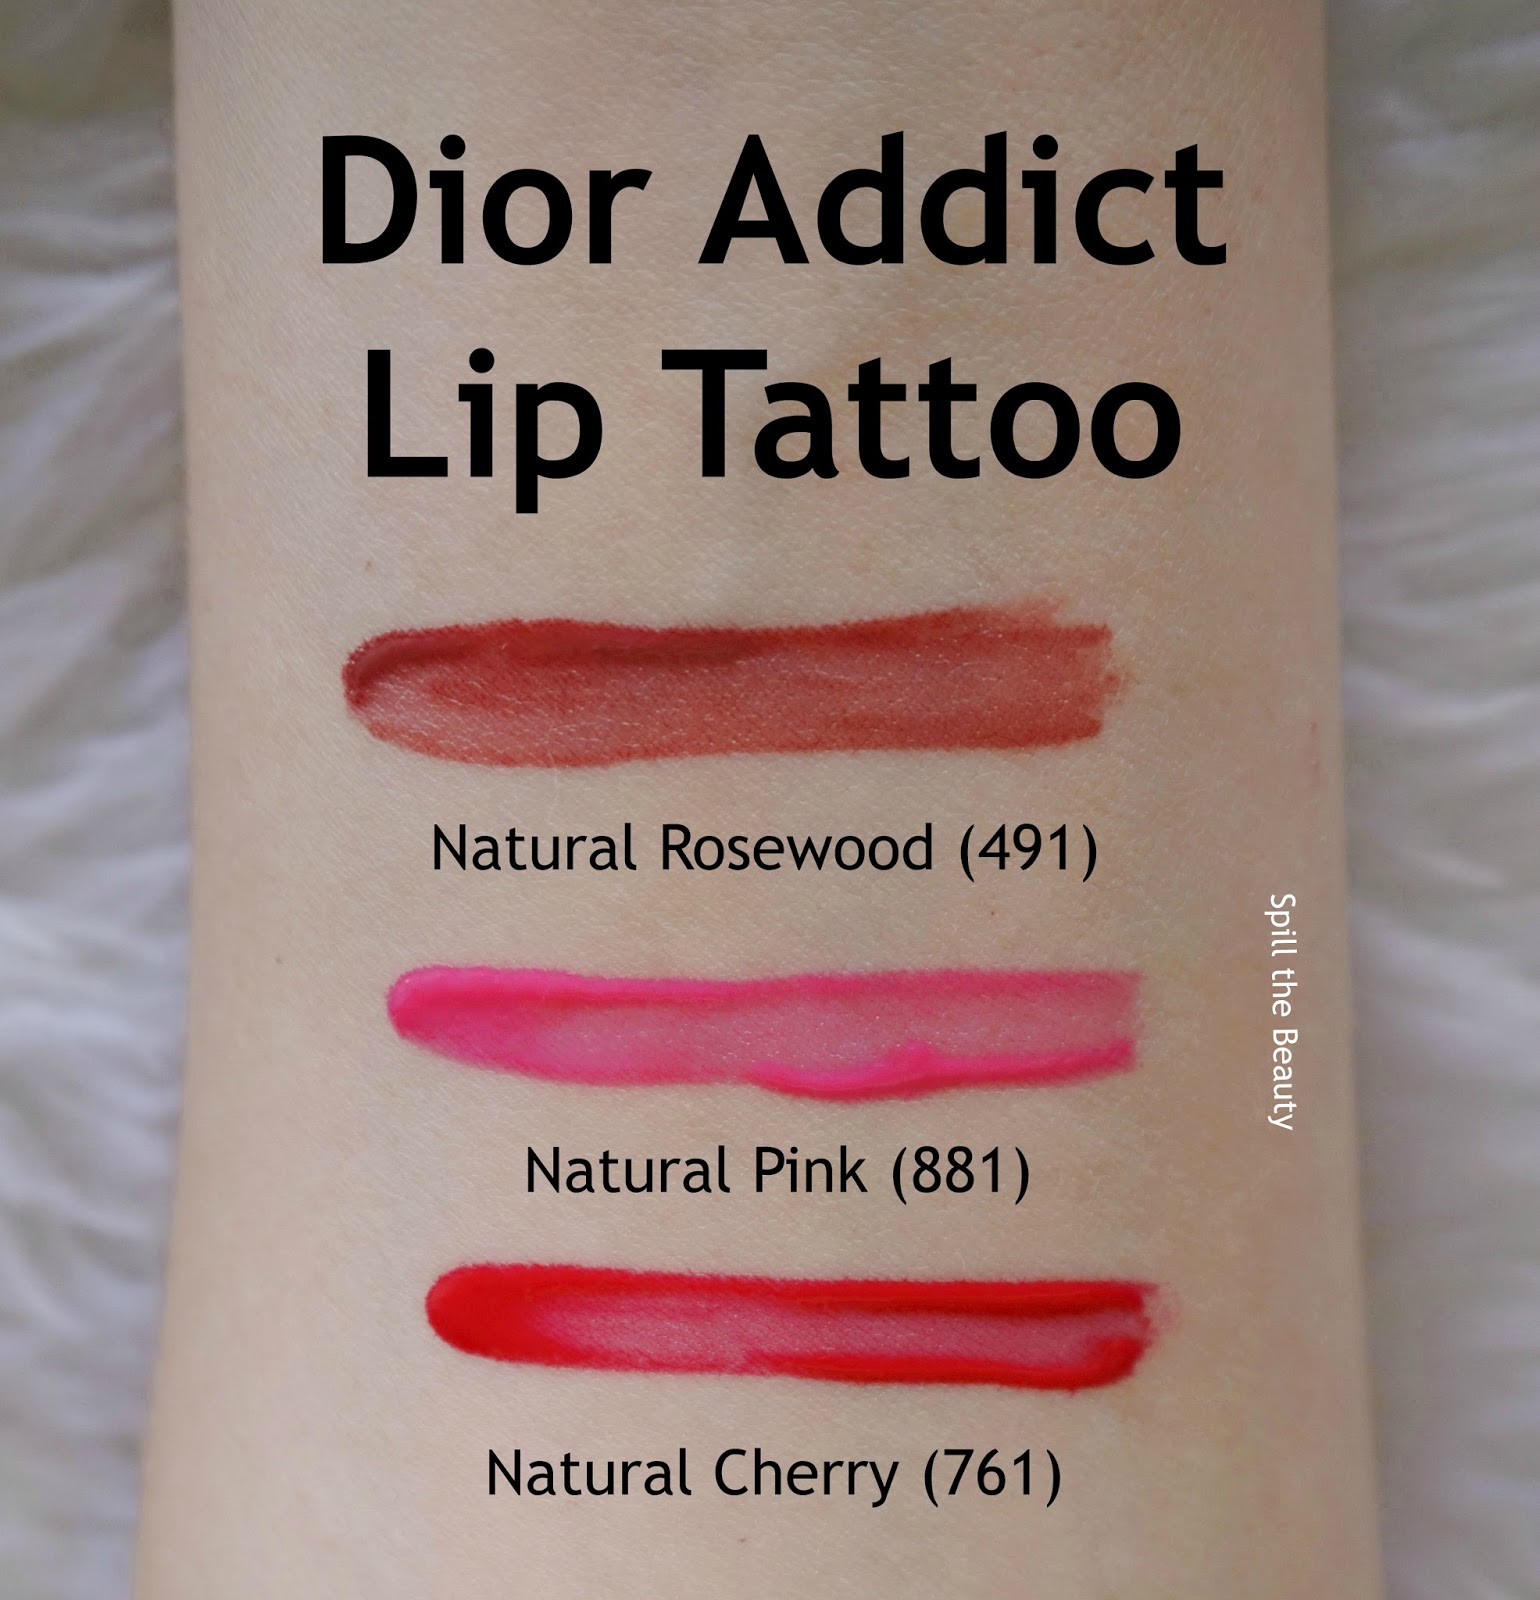 dior lip tattoo natural peach review